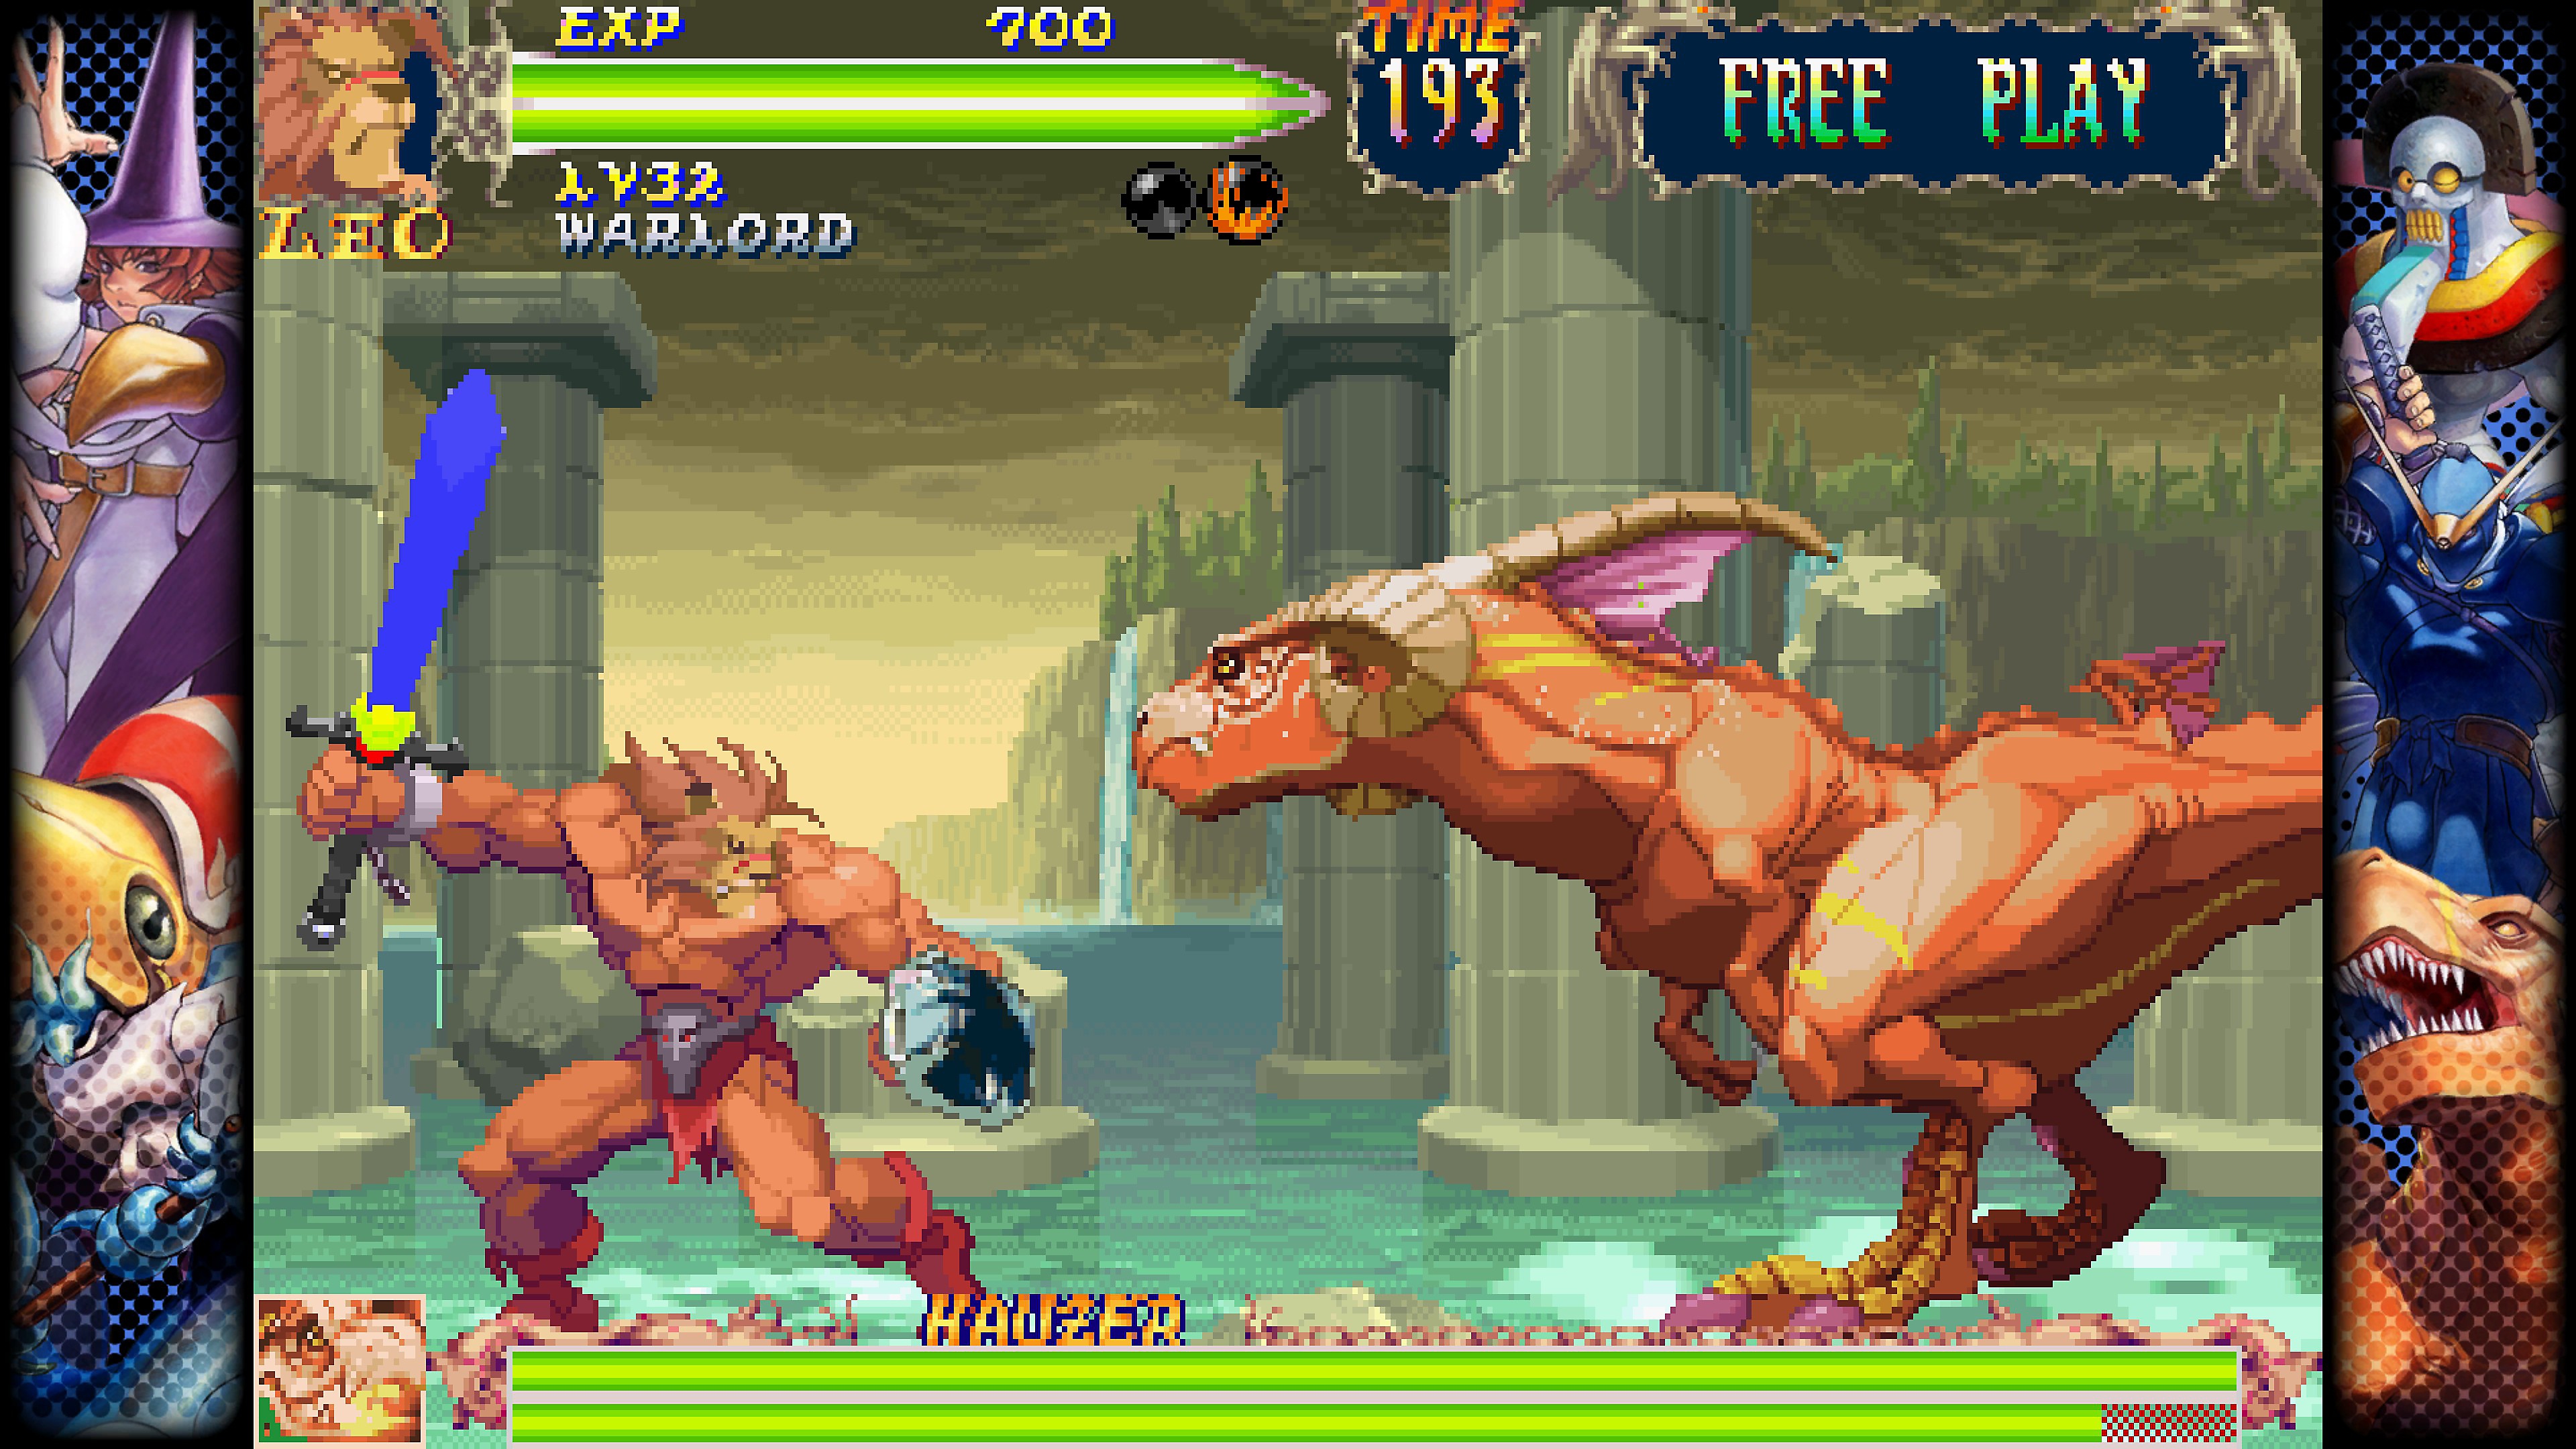 Skærmbillede til Capcom-kampsamling, som viser en kamp mellem to figurer